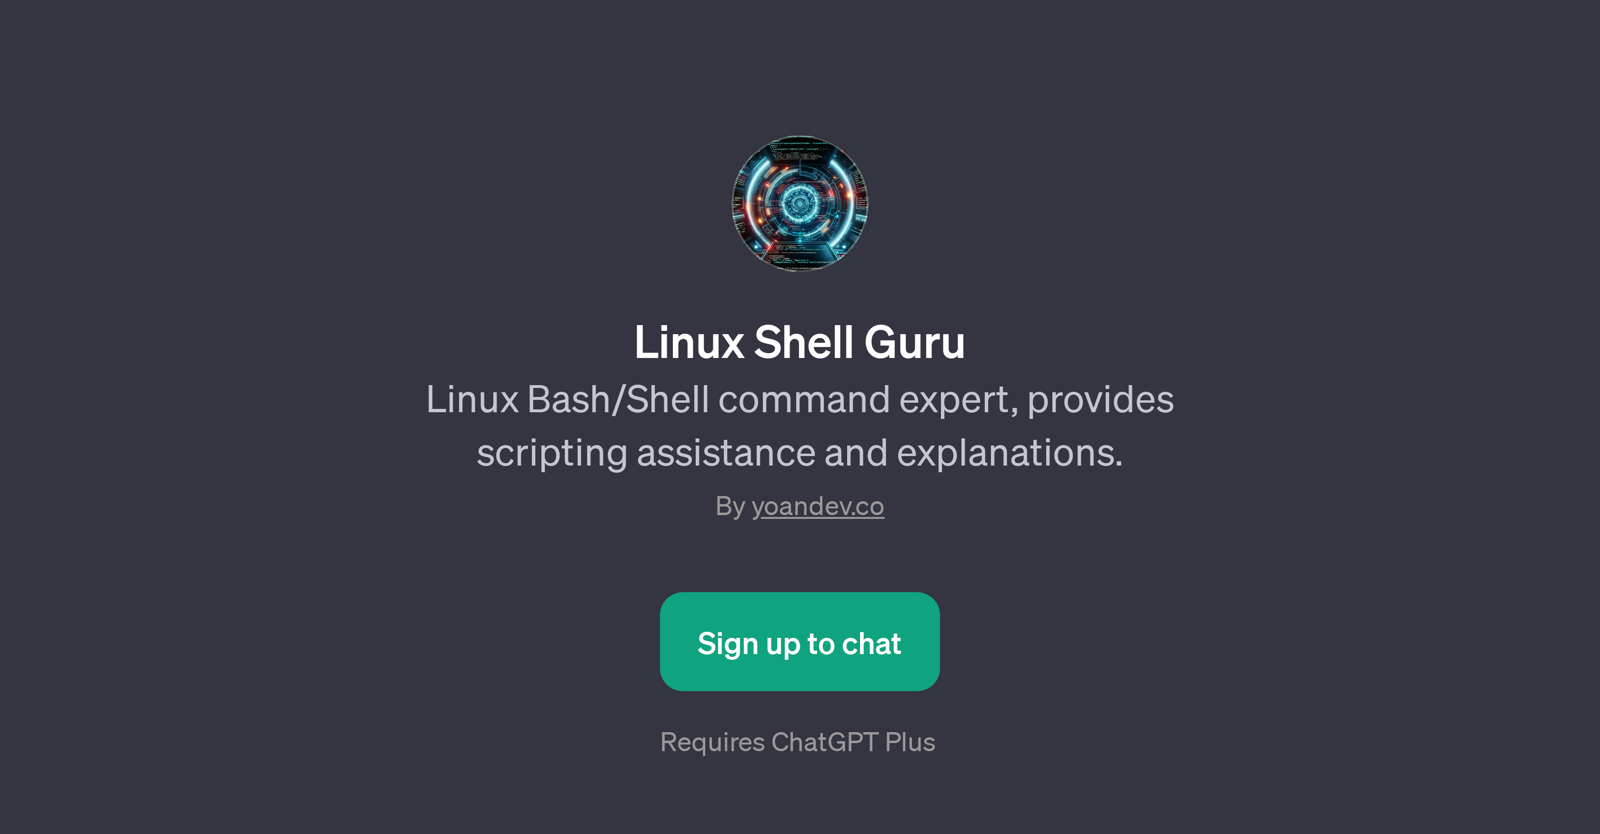 Linux Shell Guru website